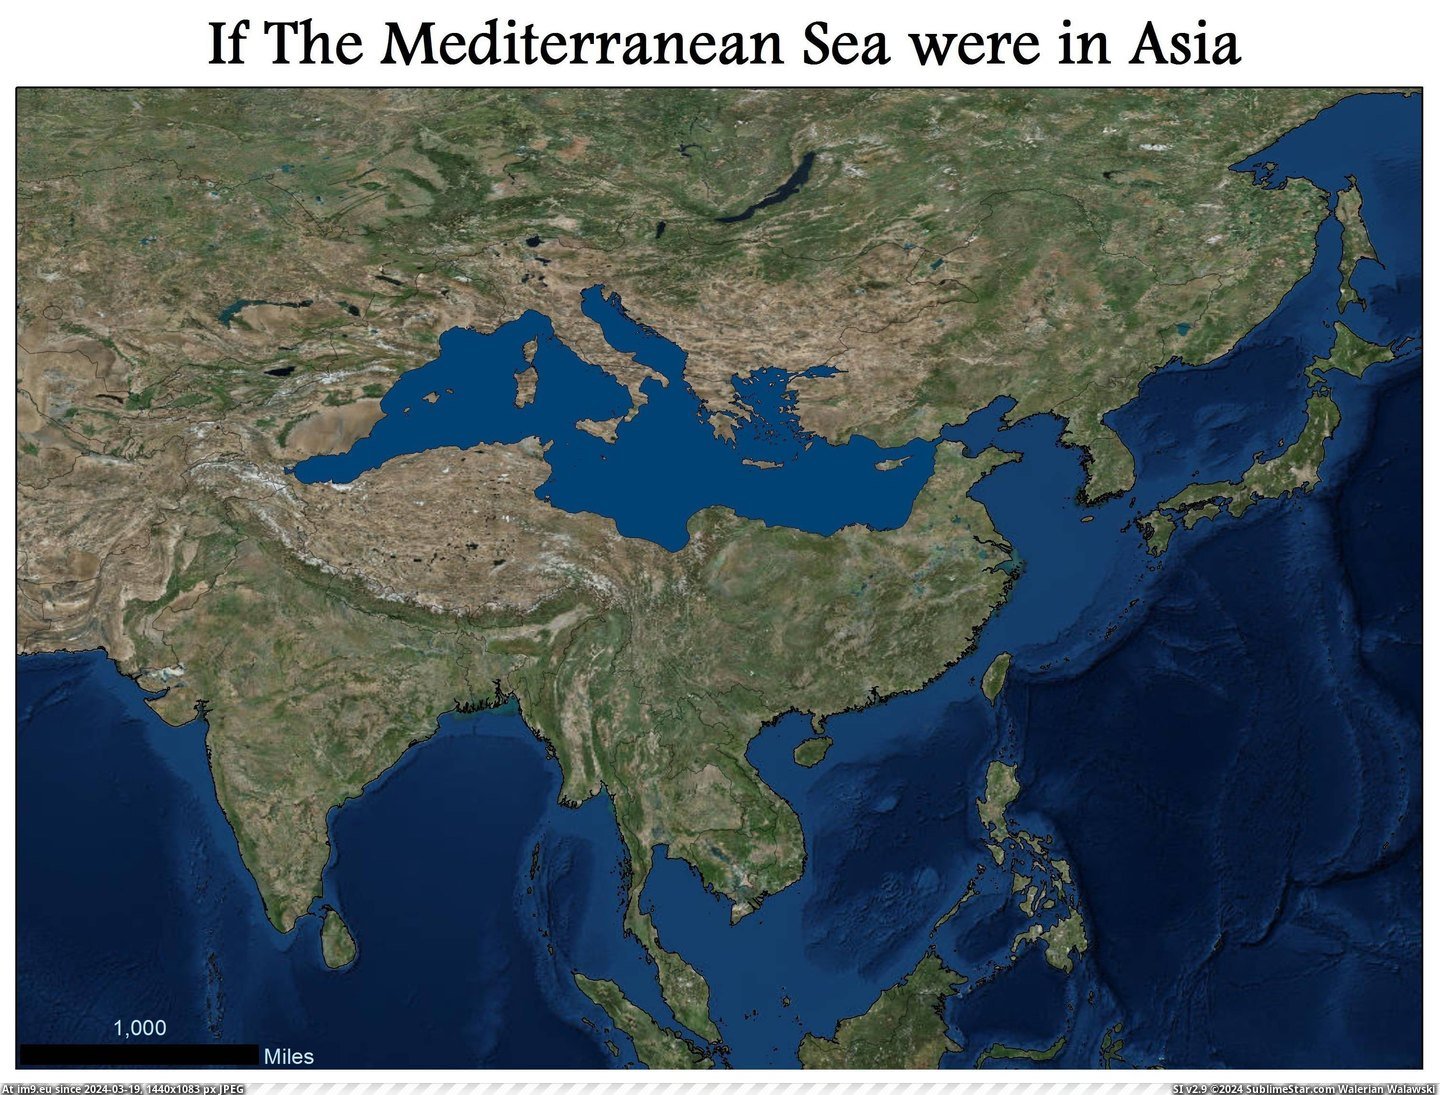 #Sea #Mediterranean #Asia [Mapporn] If the Mediterranean Sea were in Asia [3014x2279] Pic. (Bild von album My r/MAPS favs))